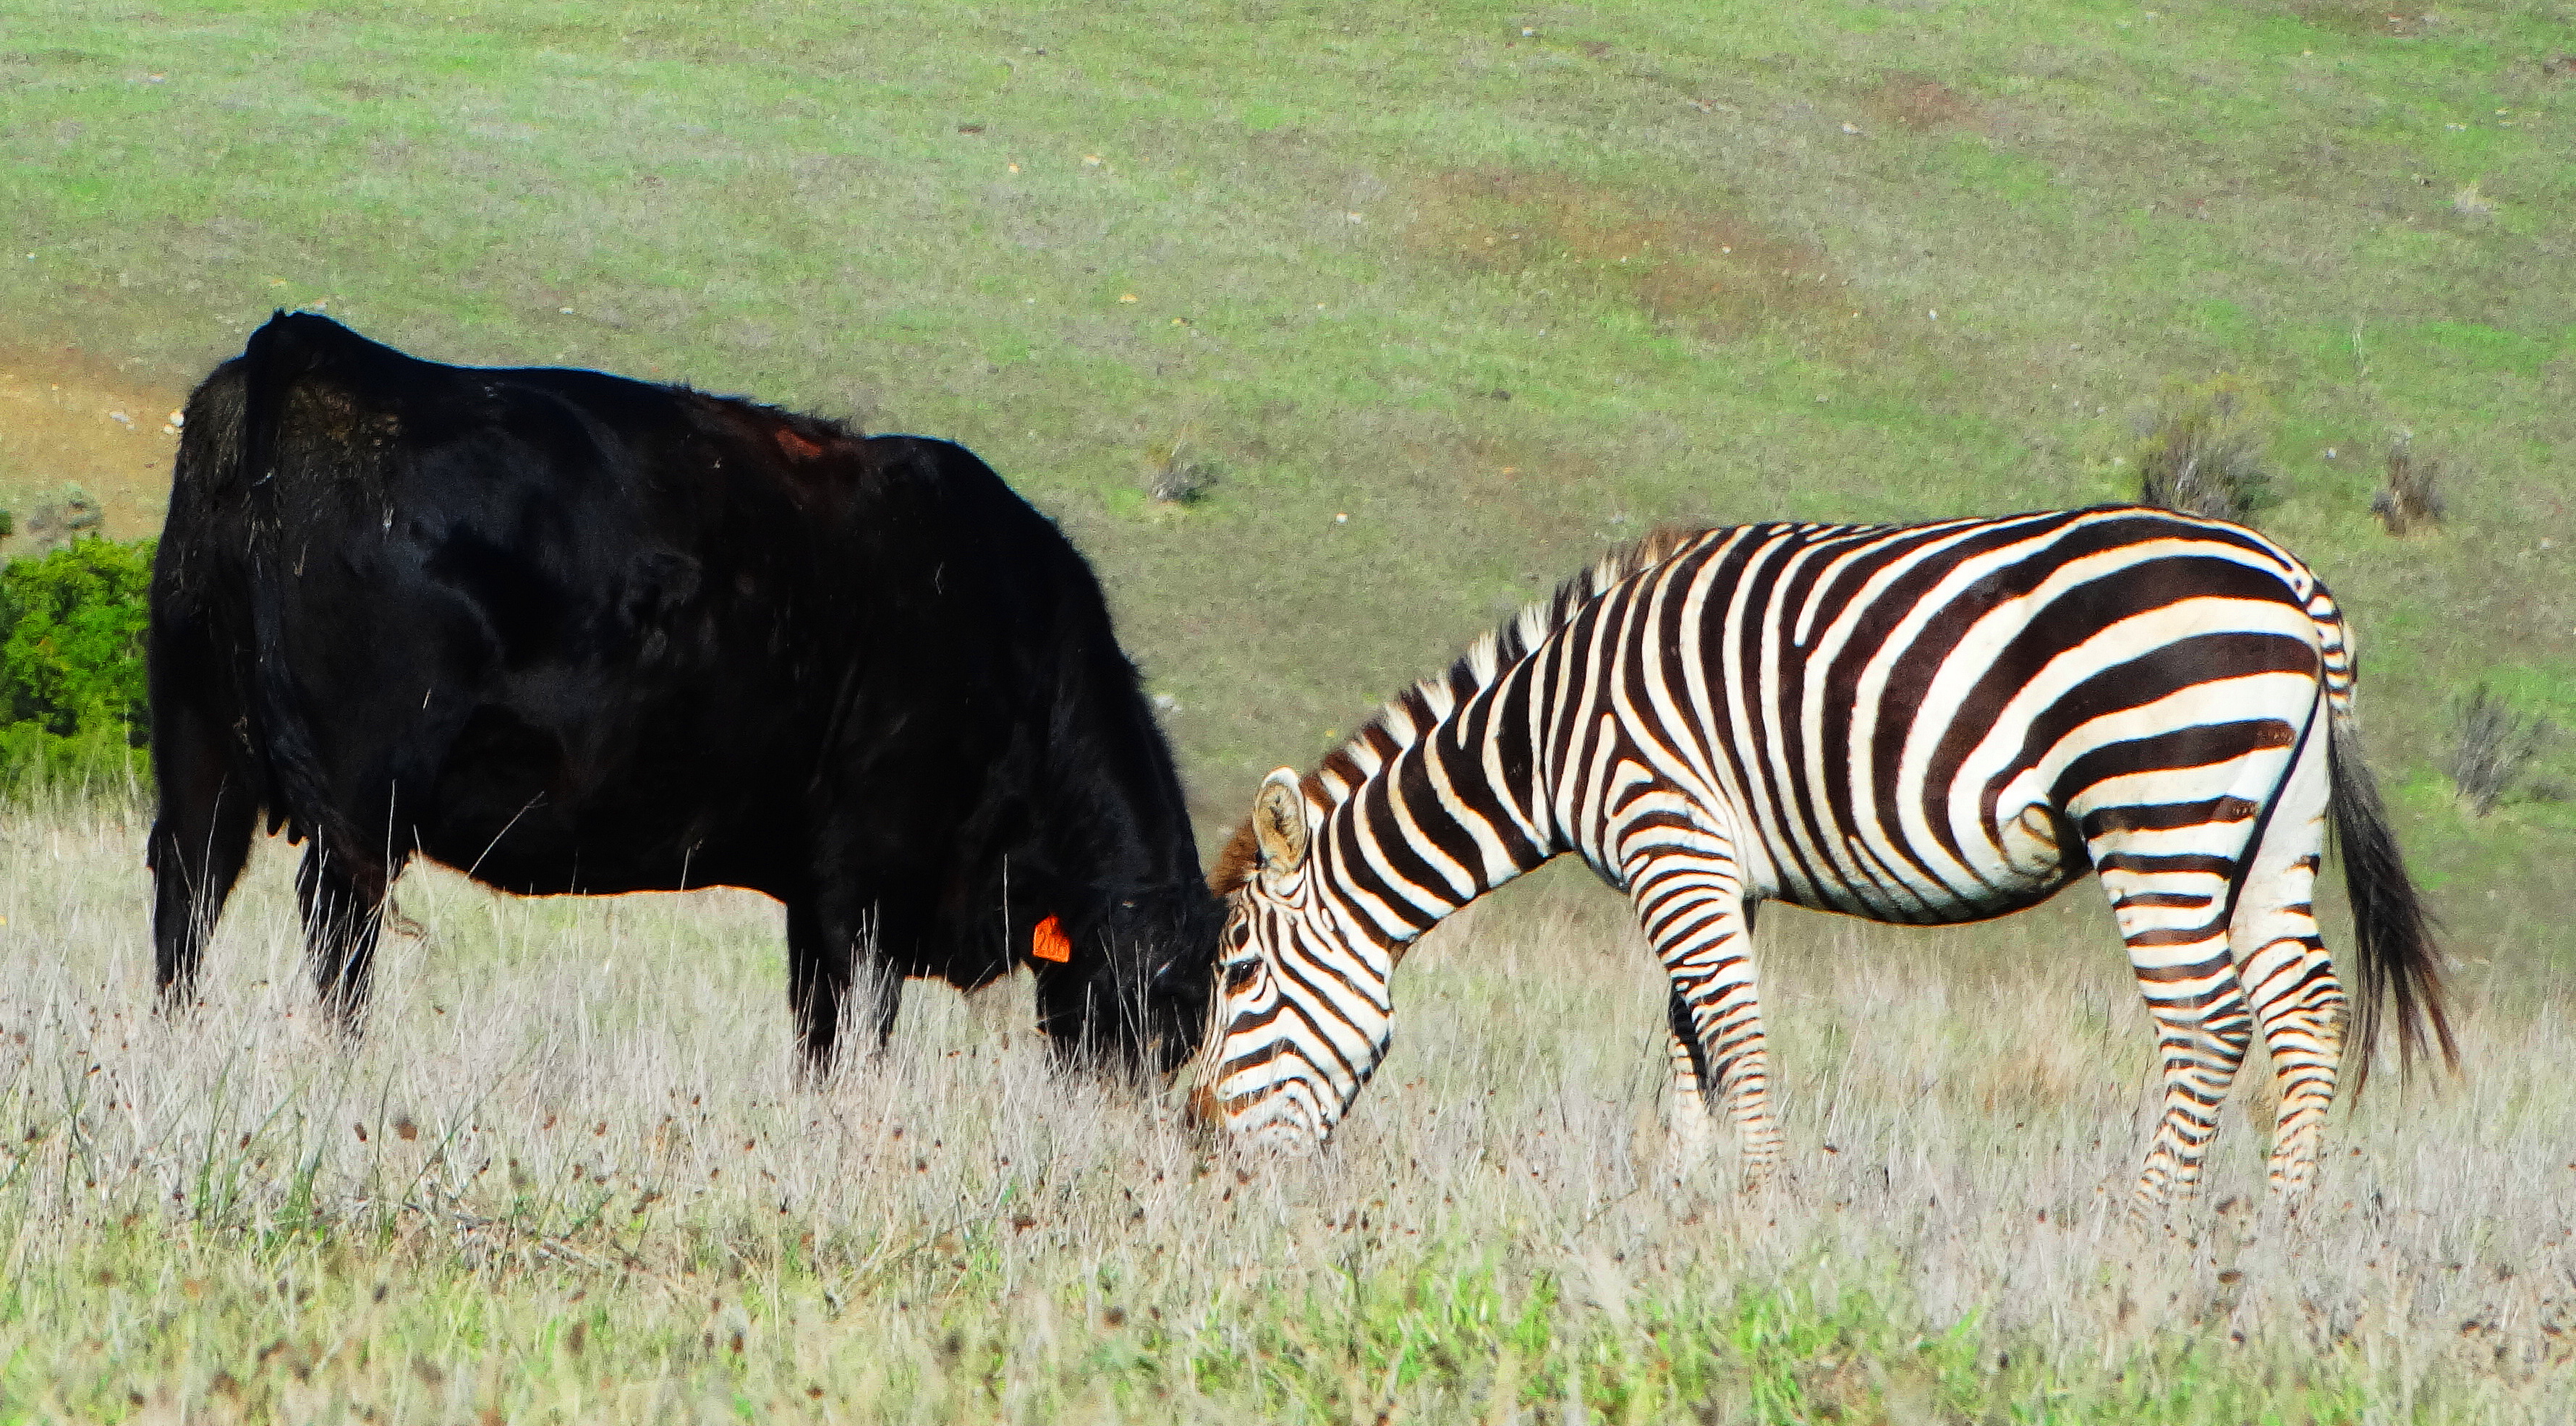 California's Wild Zebras & Elephant Kids~ |